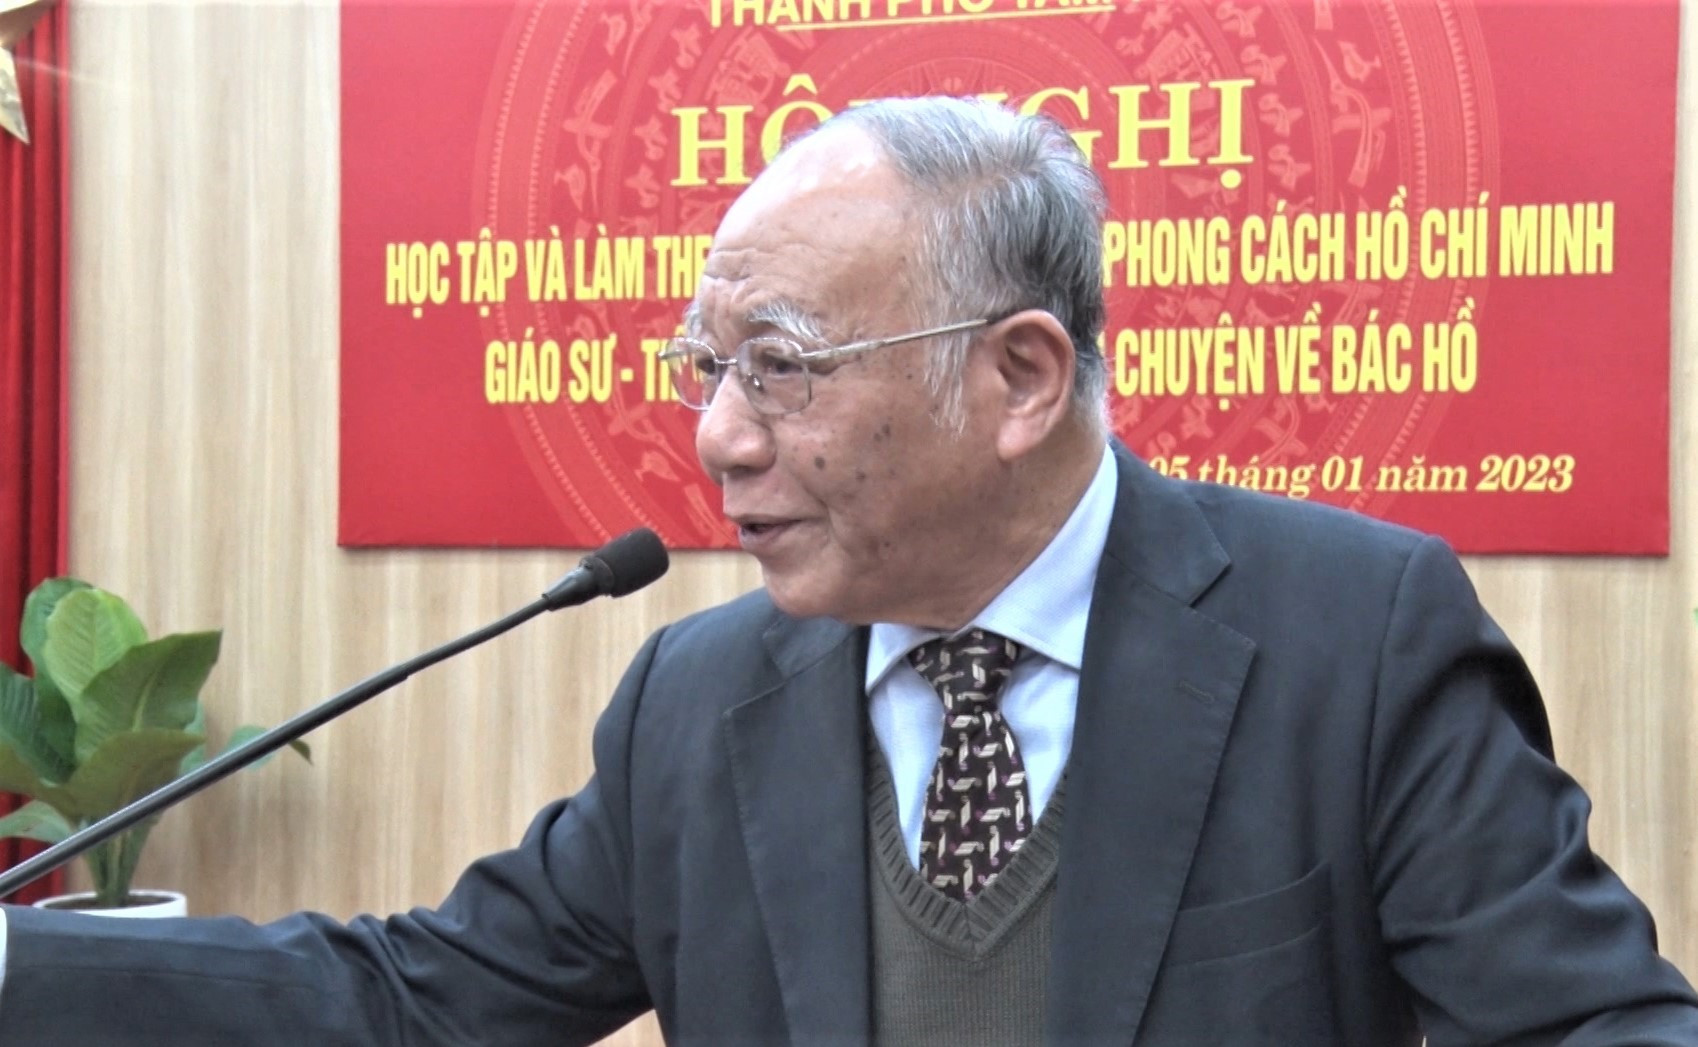 Giáo sư - Tiến sĩ Hoàng Chí Bảo nói chuyện về Bác Hồ